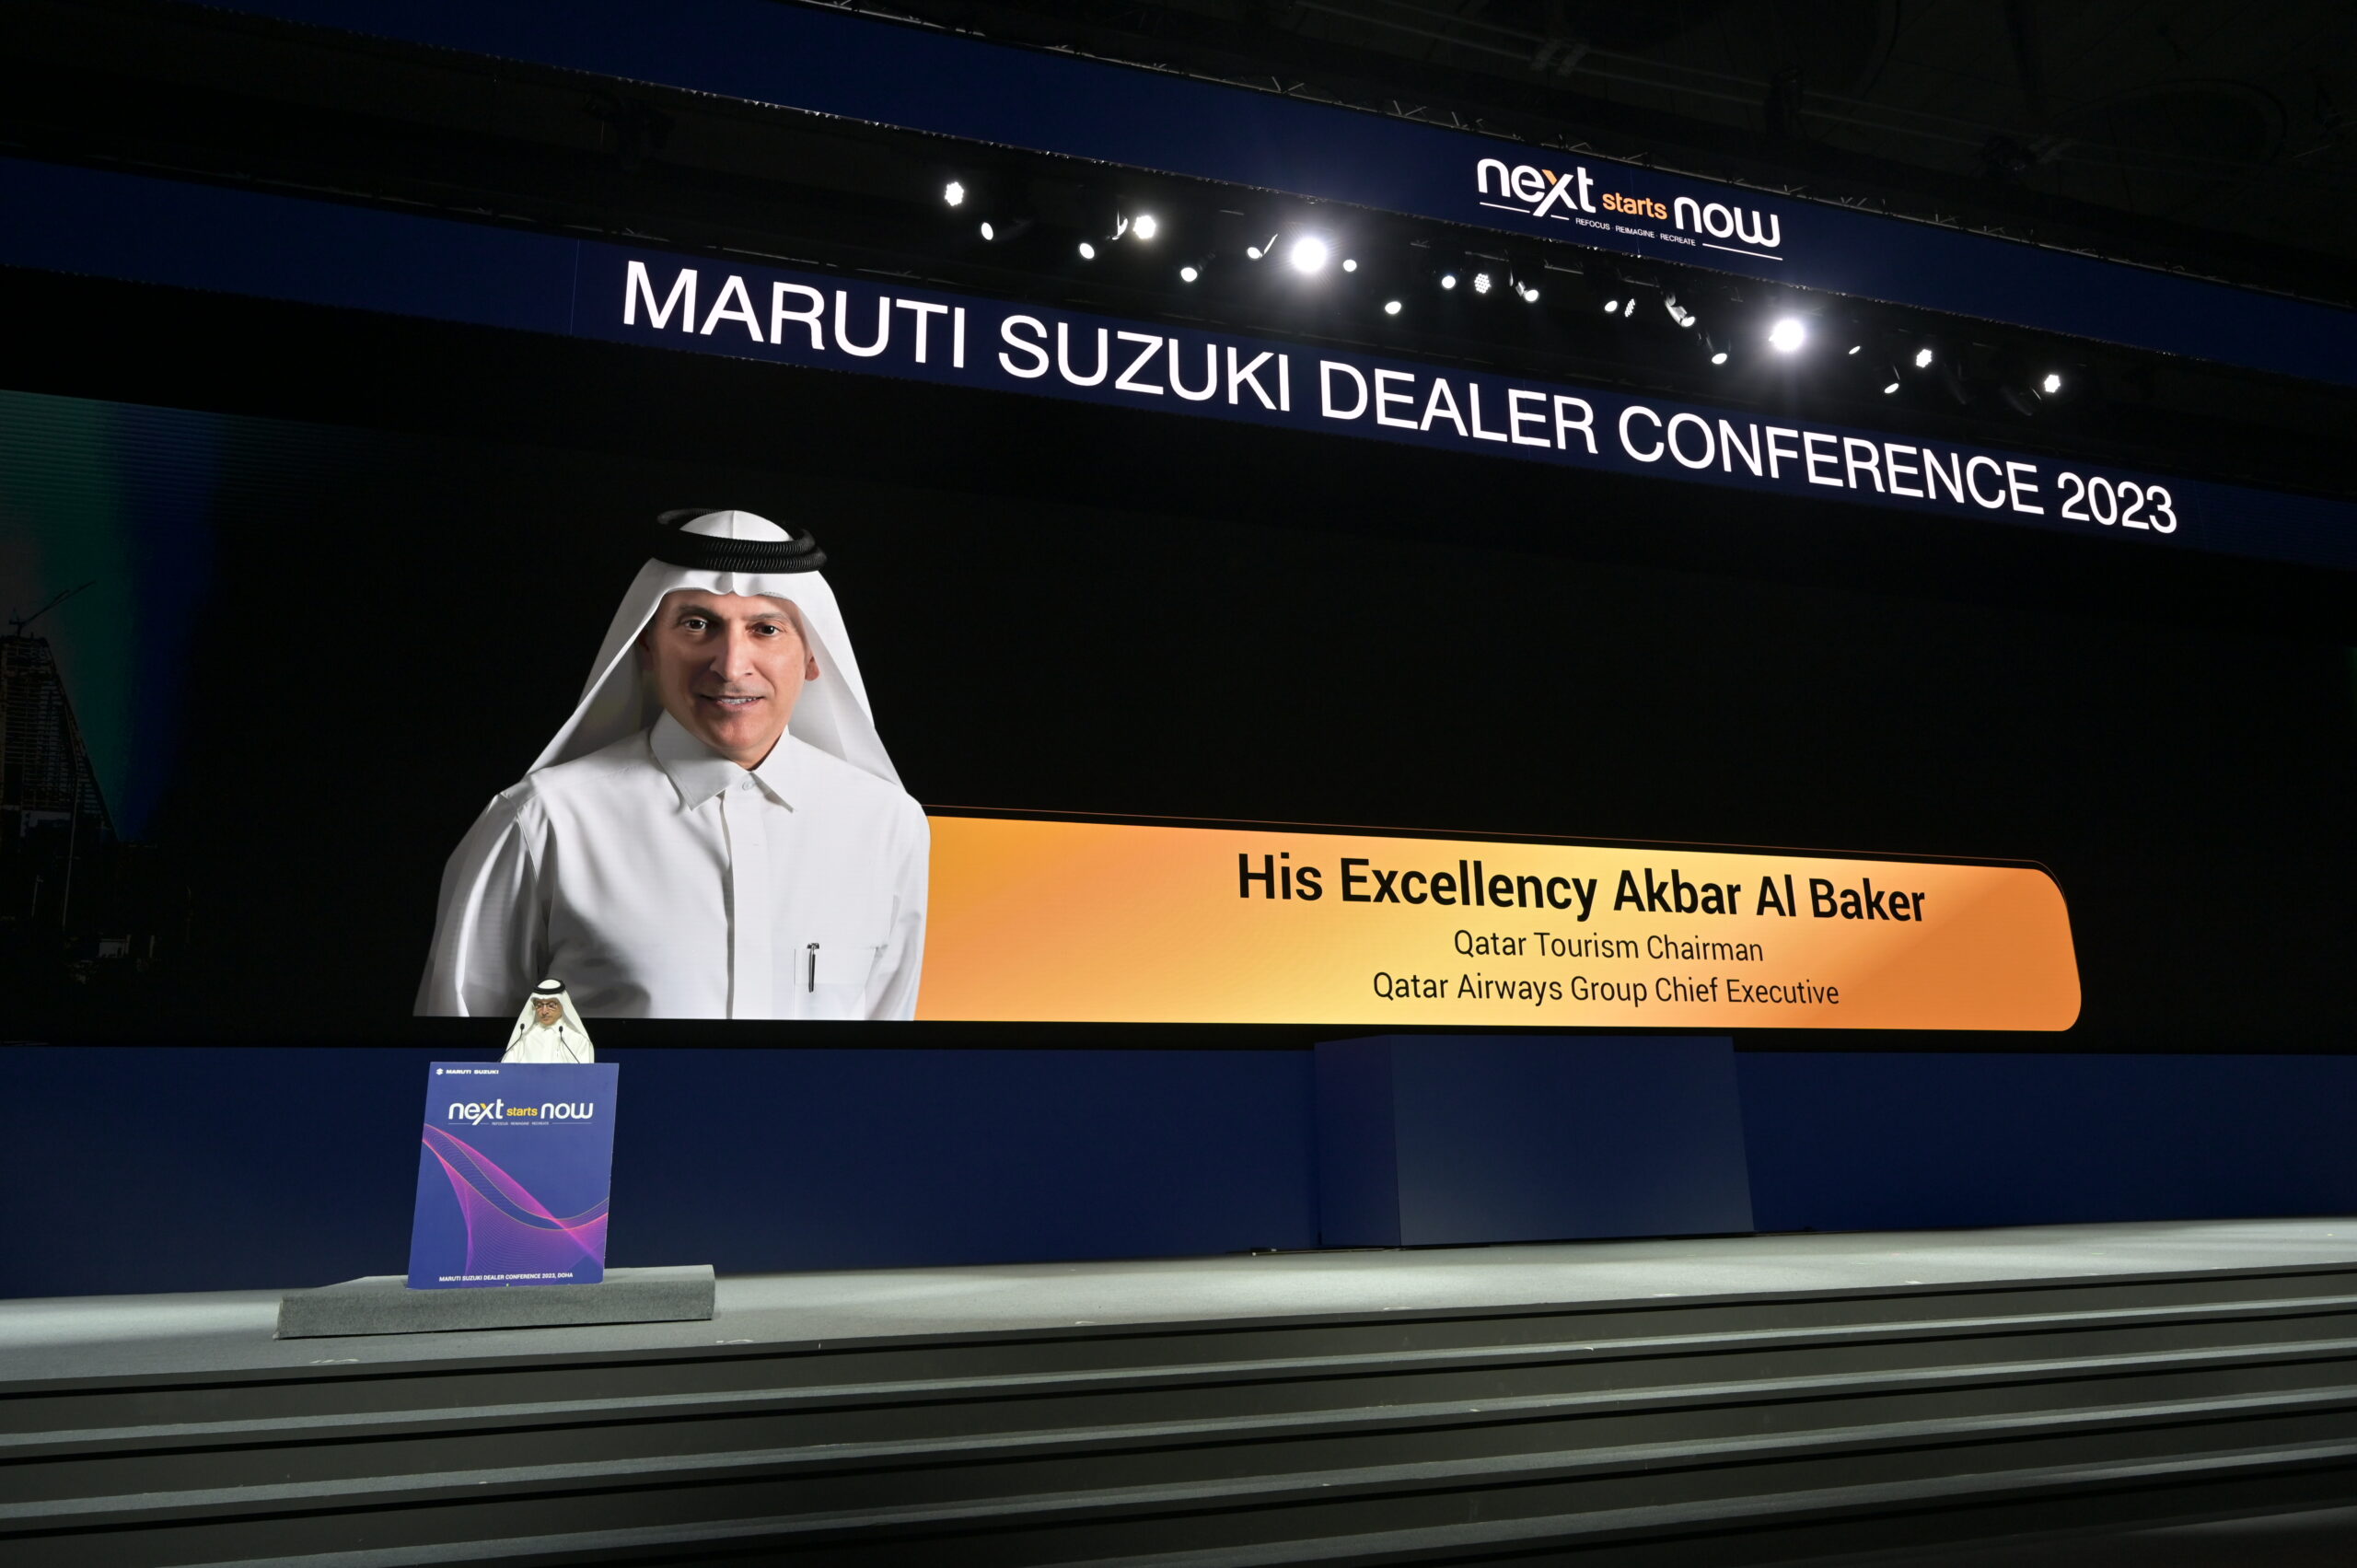 Qatar Tourism hosts the Maruti Suzuki Dealer Conference 2023